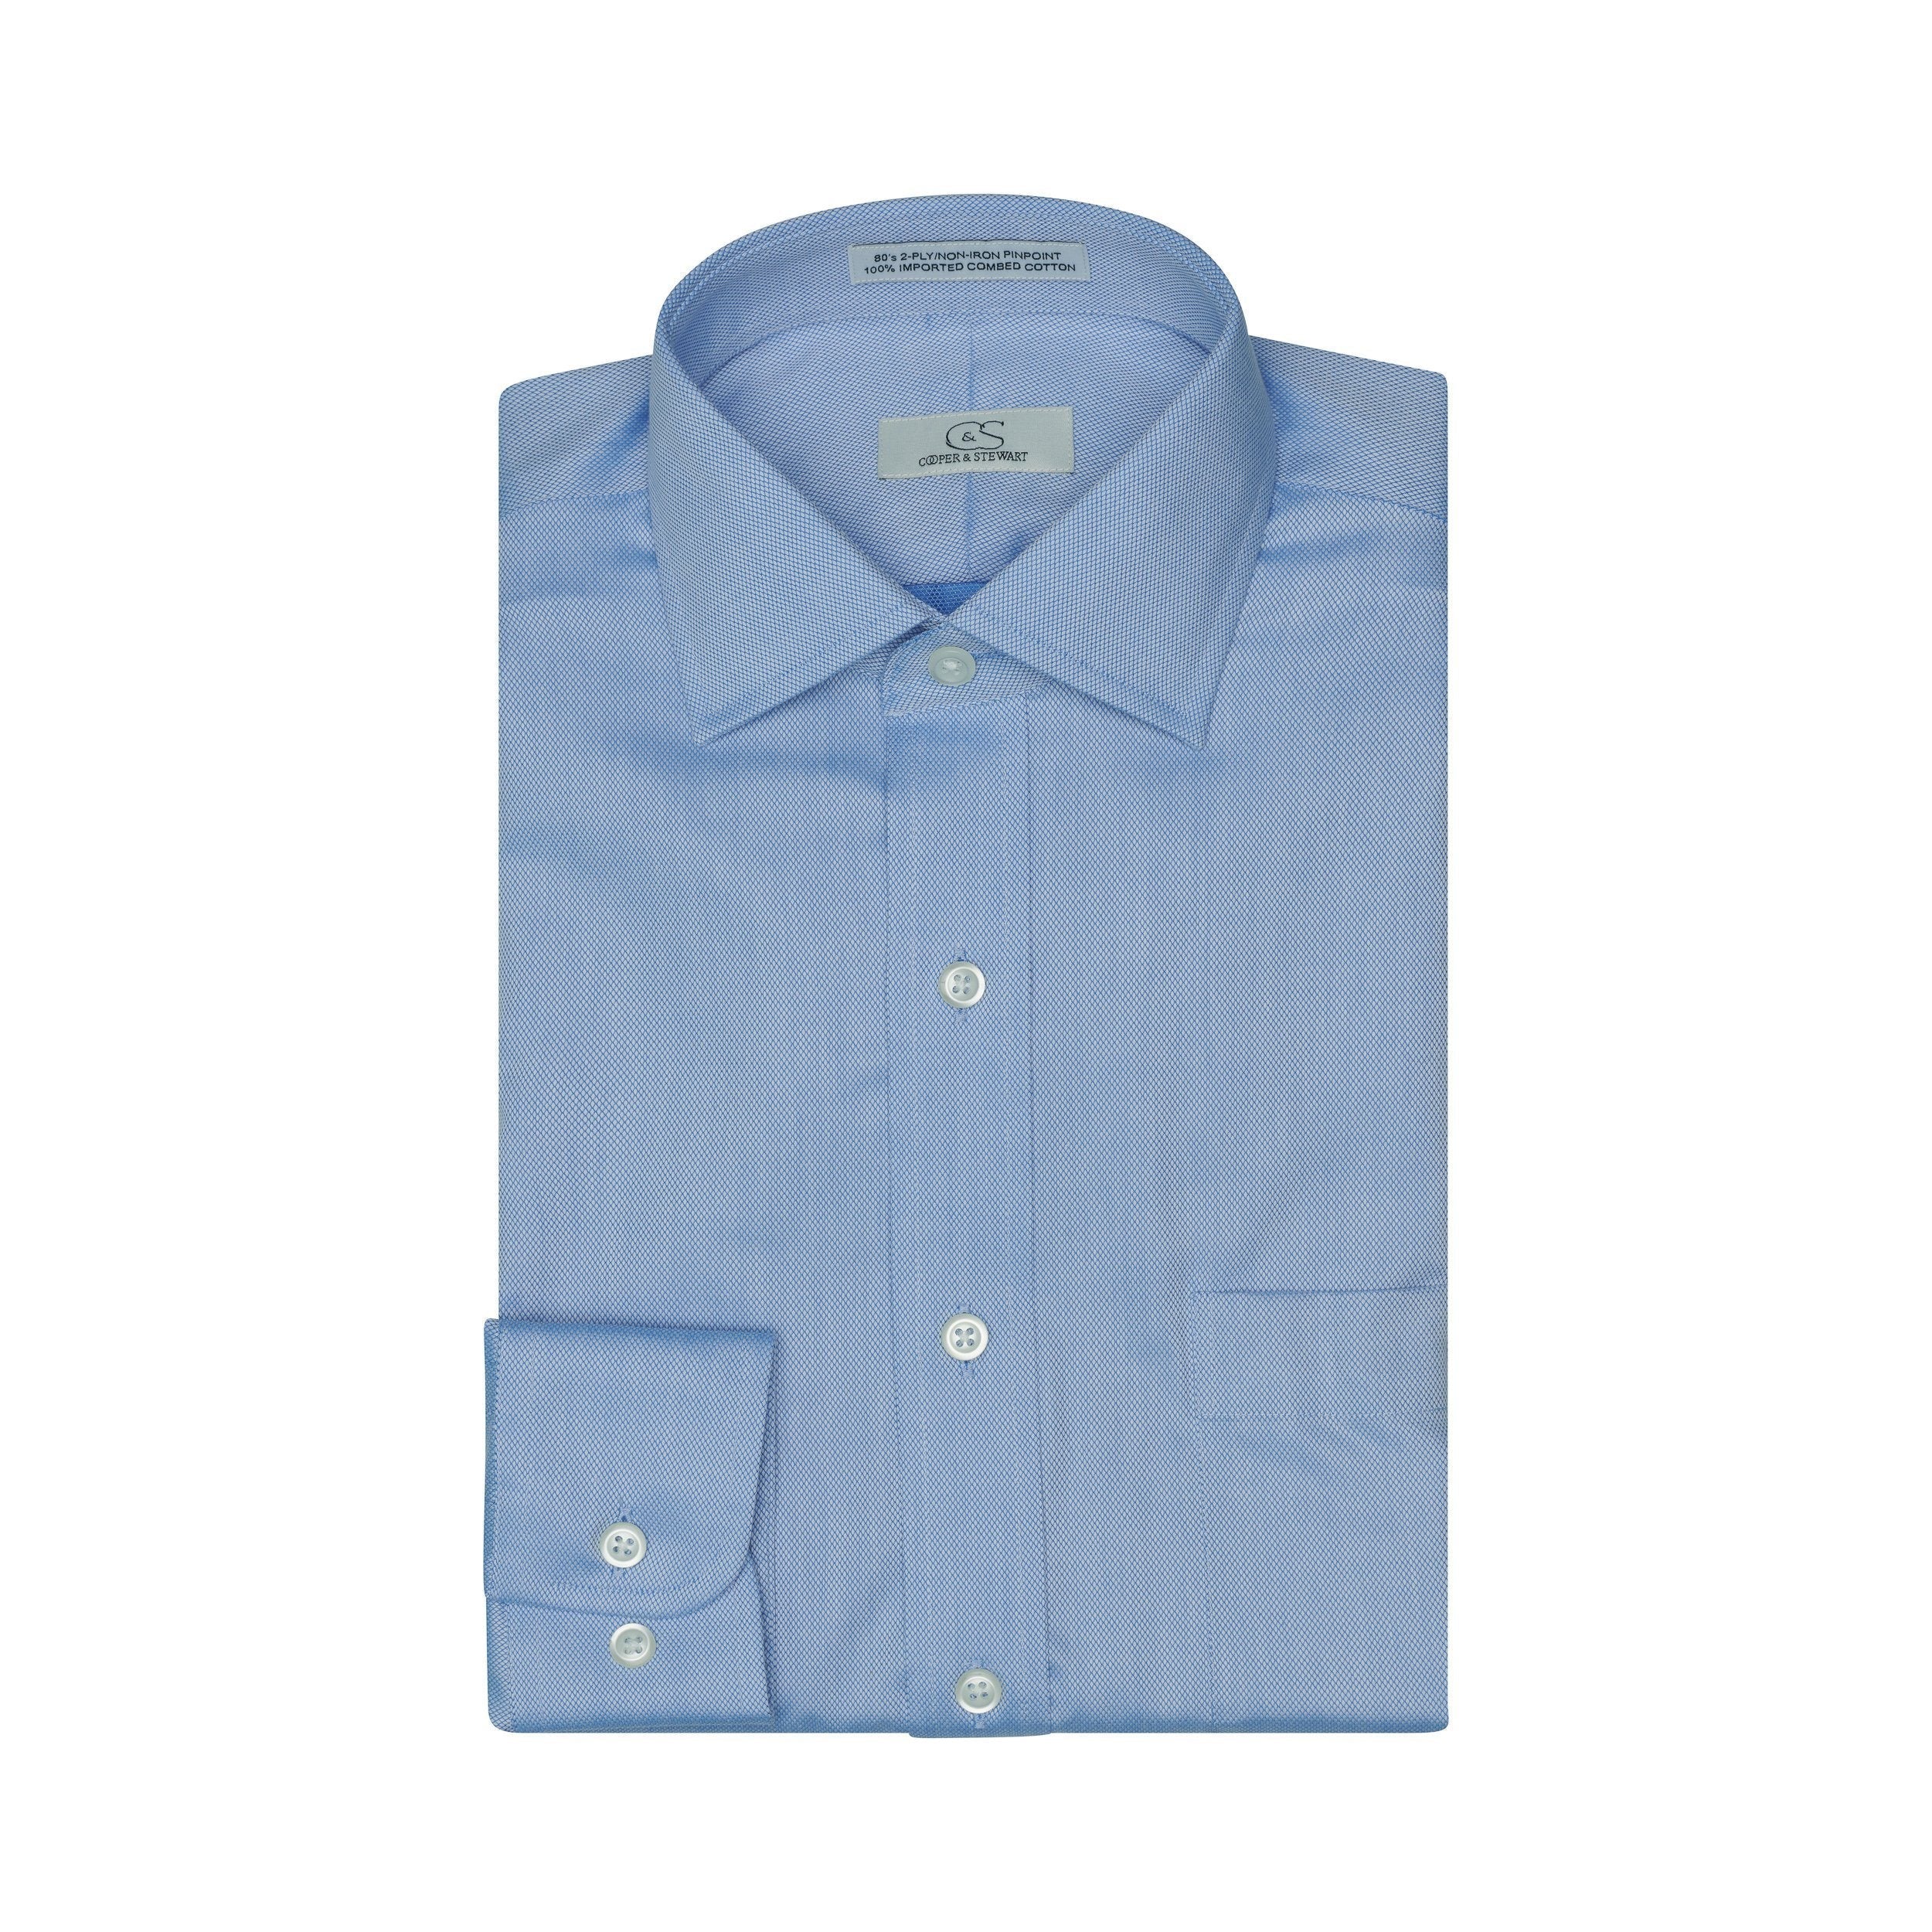 006 - Blue Royal Oxford TF Dress Shirt Best Dress Shirt 